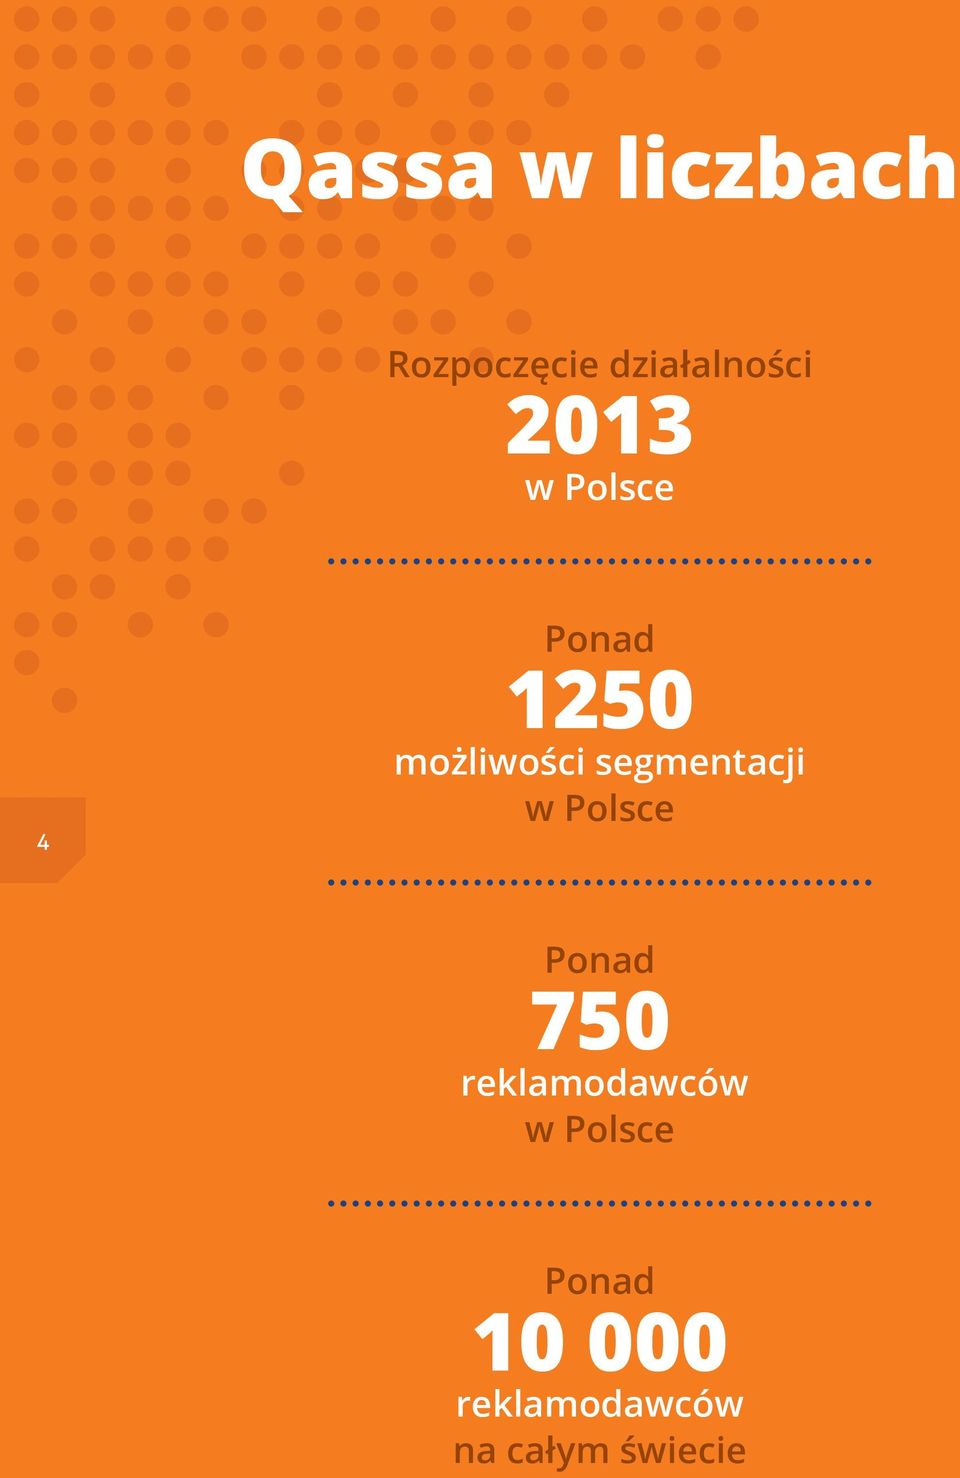 segmentacji w Polsce Ponad 750 reklamodawców